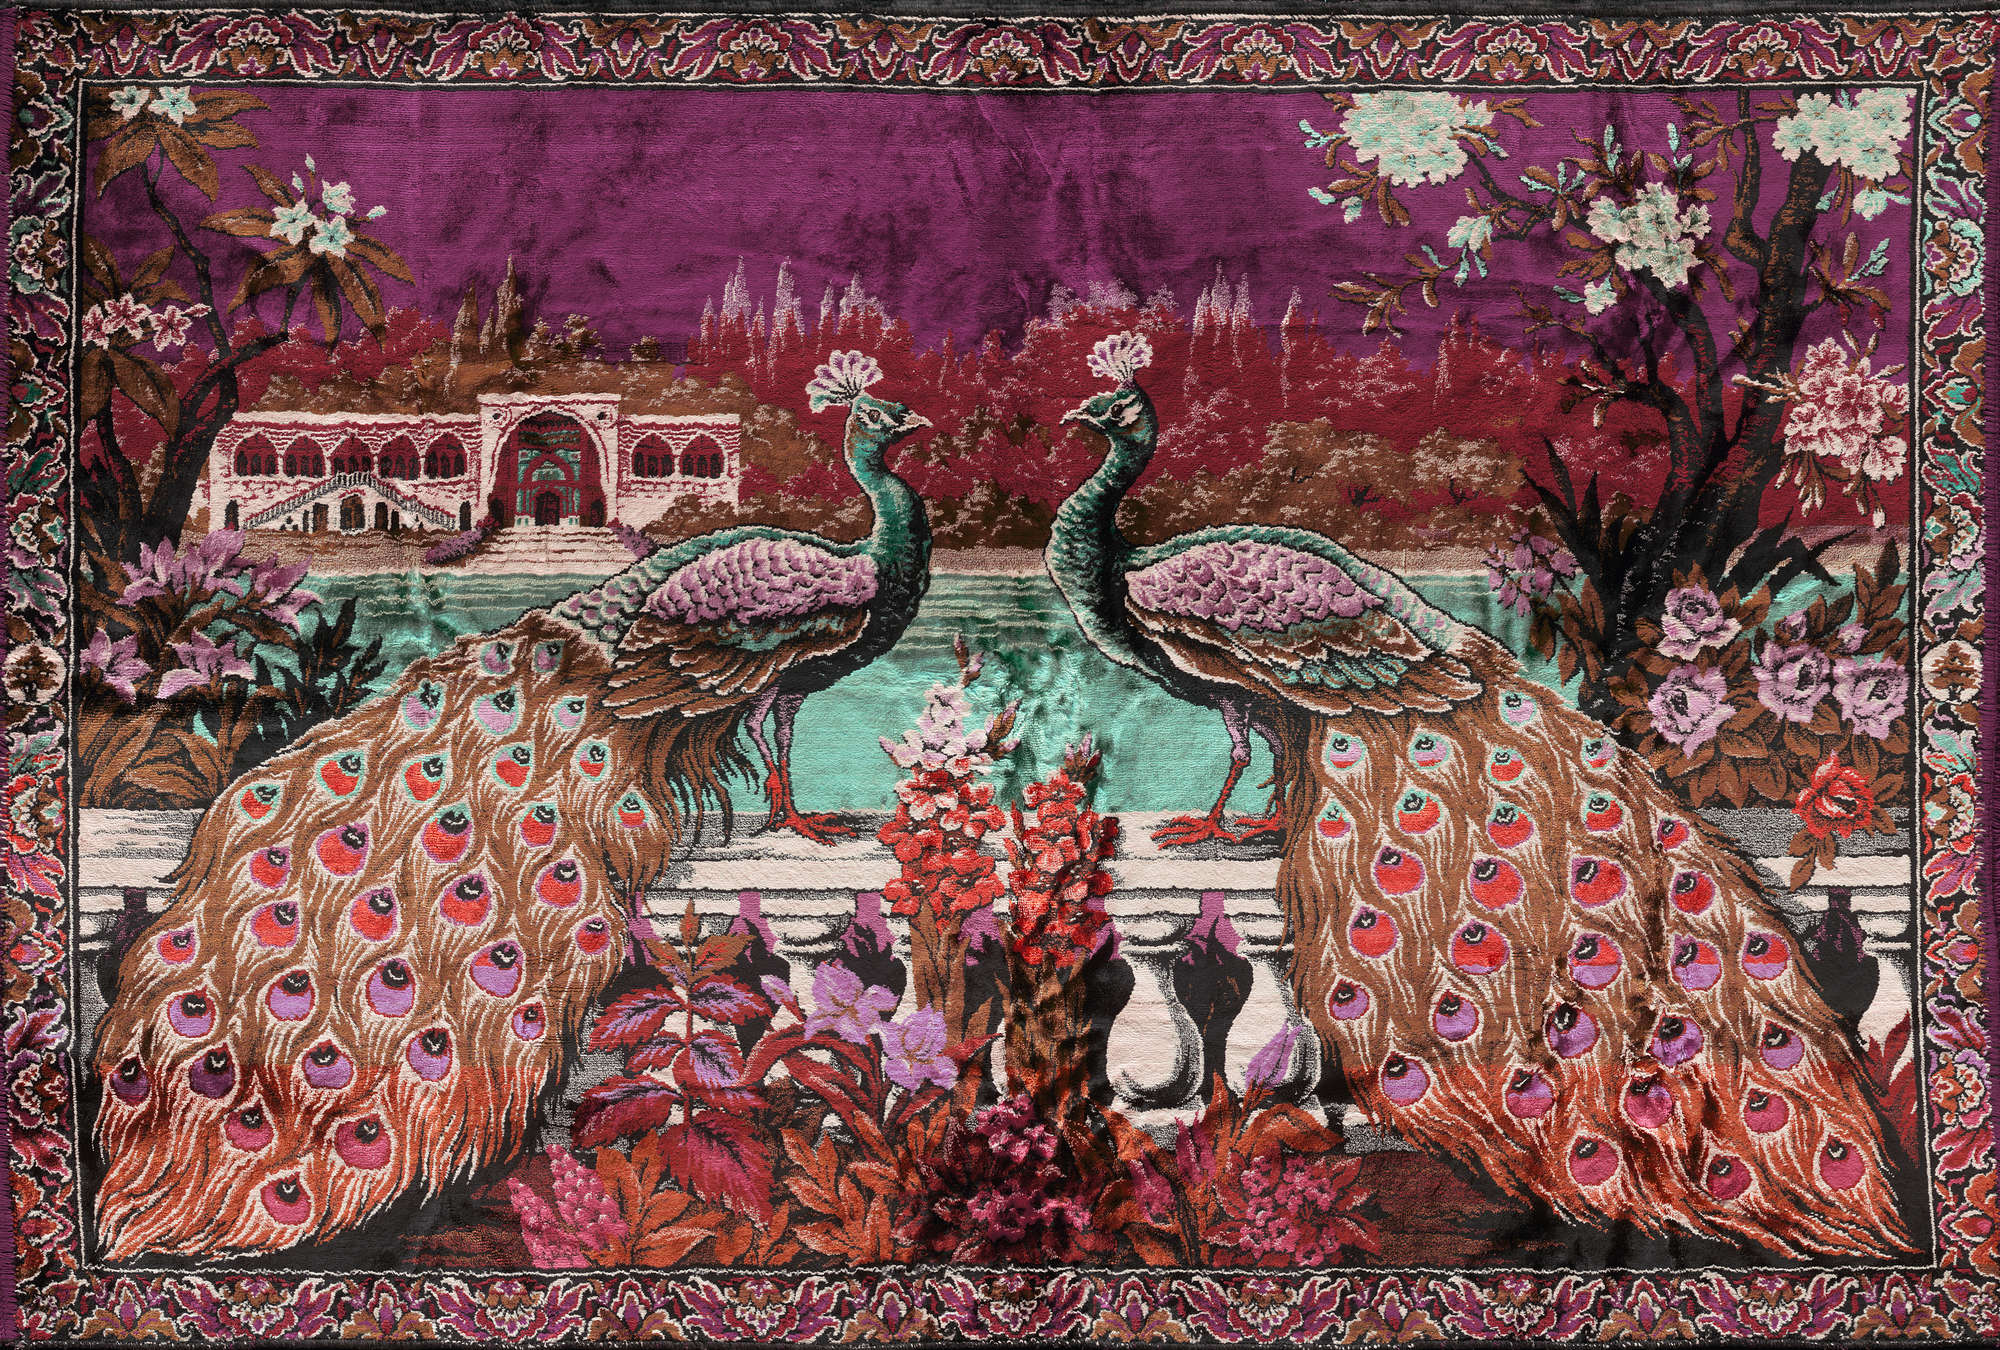             Muurschildering India decor, exotische pauw - paars, blauw, roze
        